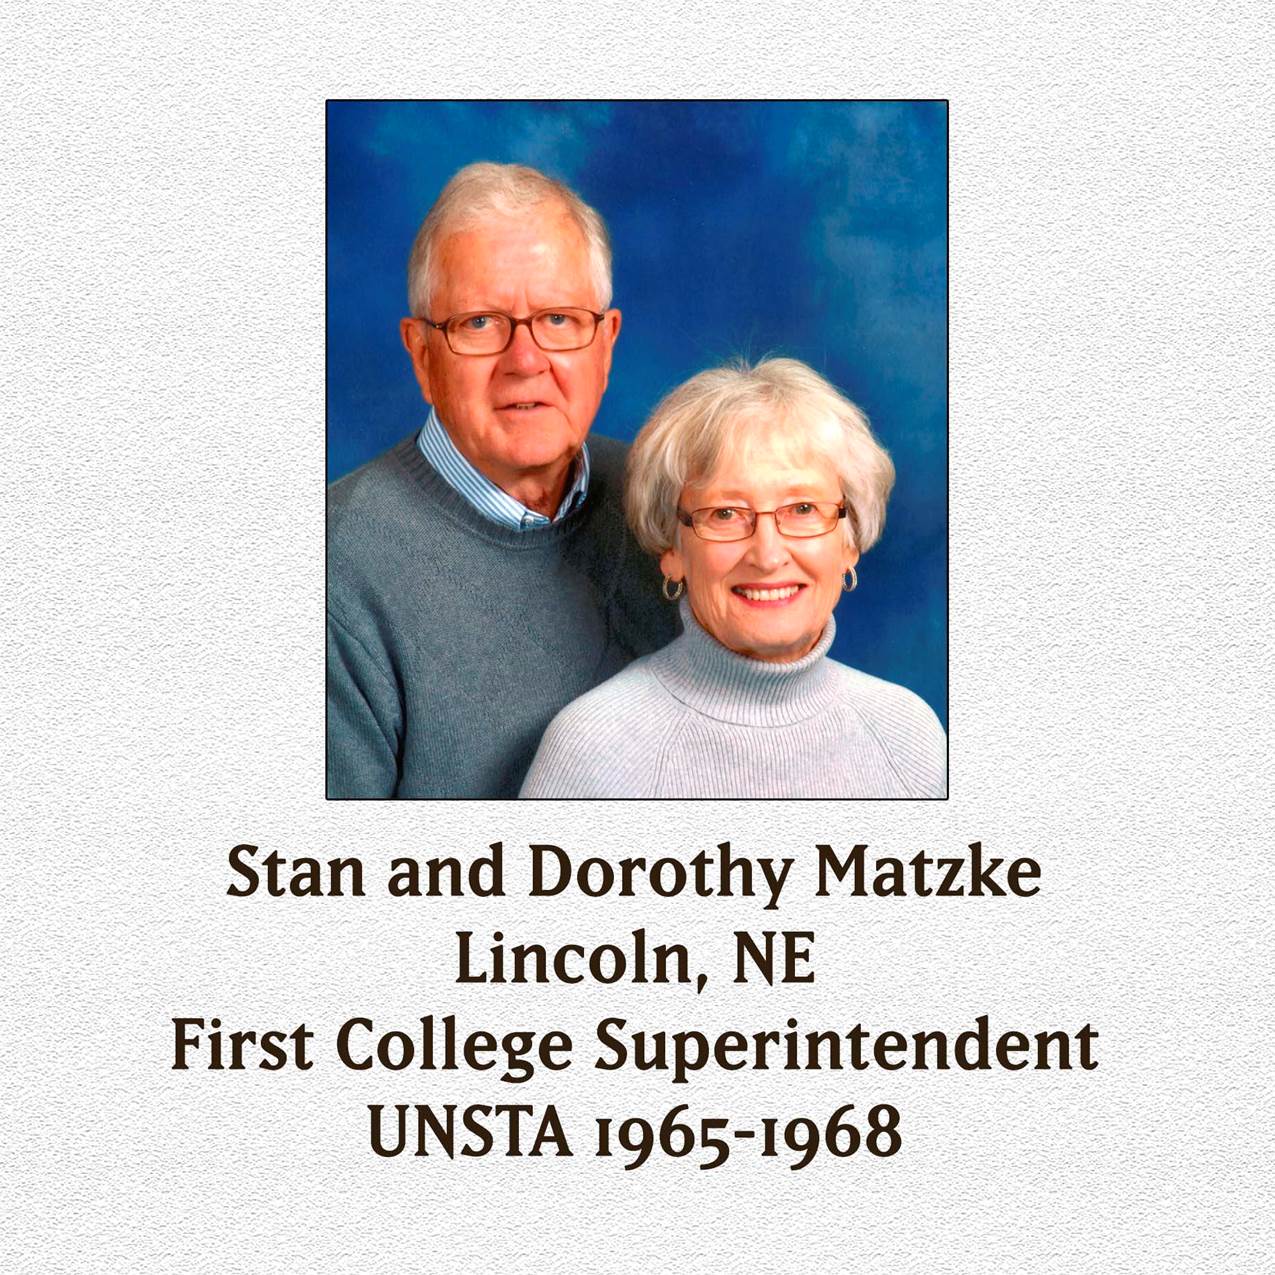 Matzkes will receive an UNSTA-NCTA Honorary Life Membership